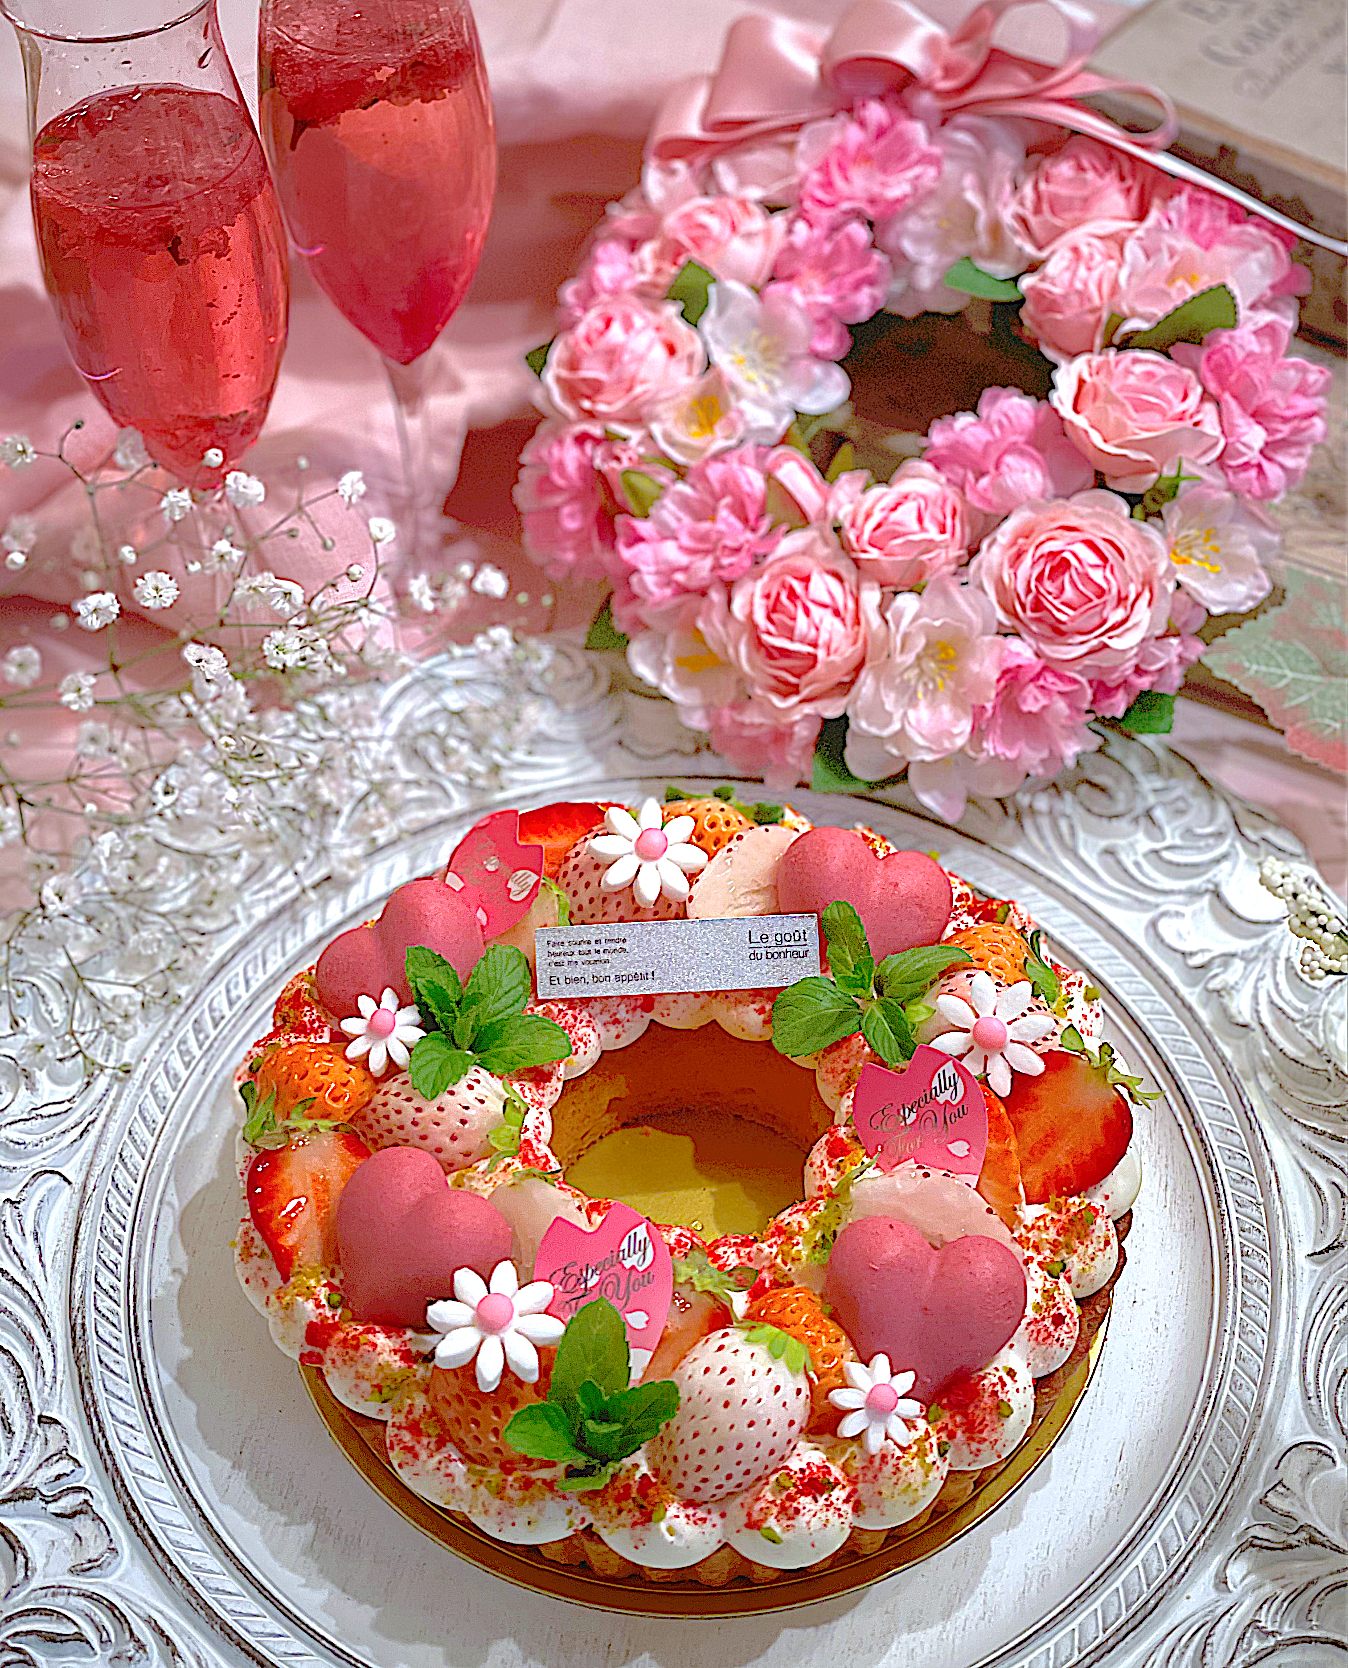 大好きないっちゃんが誕生日プレゼントに素敵なお花のリースを作って送ってくれました(´•̥̥̥ω•̥̥̥`)💕感謝の気持ちを込めて赤桃白3色のいちごのリースタルトを作りました🌸🍓🌸